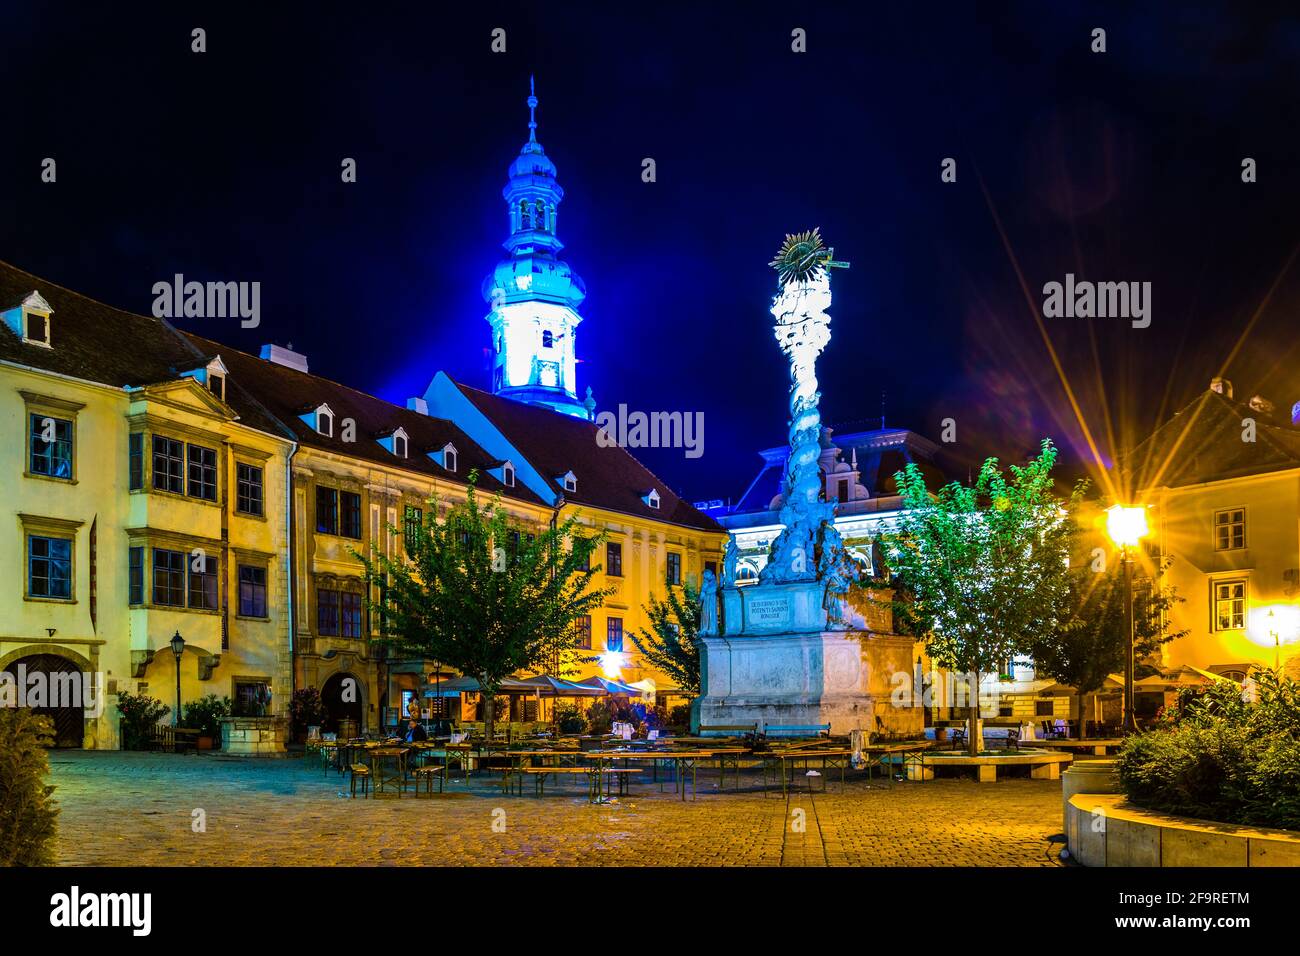 Vue nocturne de la place principale éclairée Dans la ville hongroise Sopron y compris la colonne Sainte trinité et la célèbre cheminée Banque D'Images